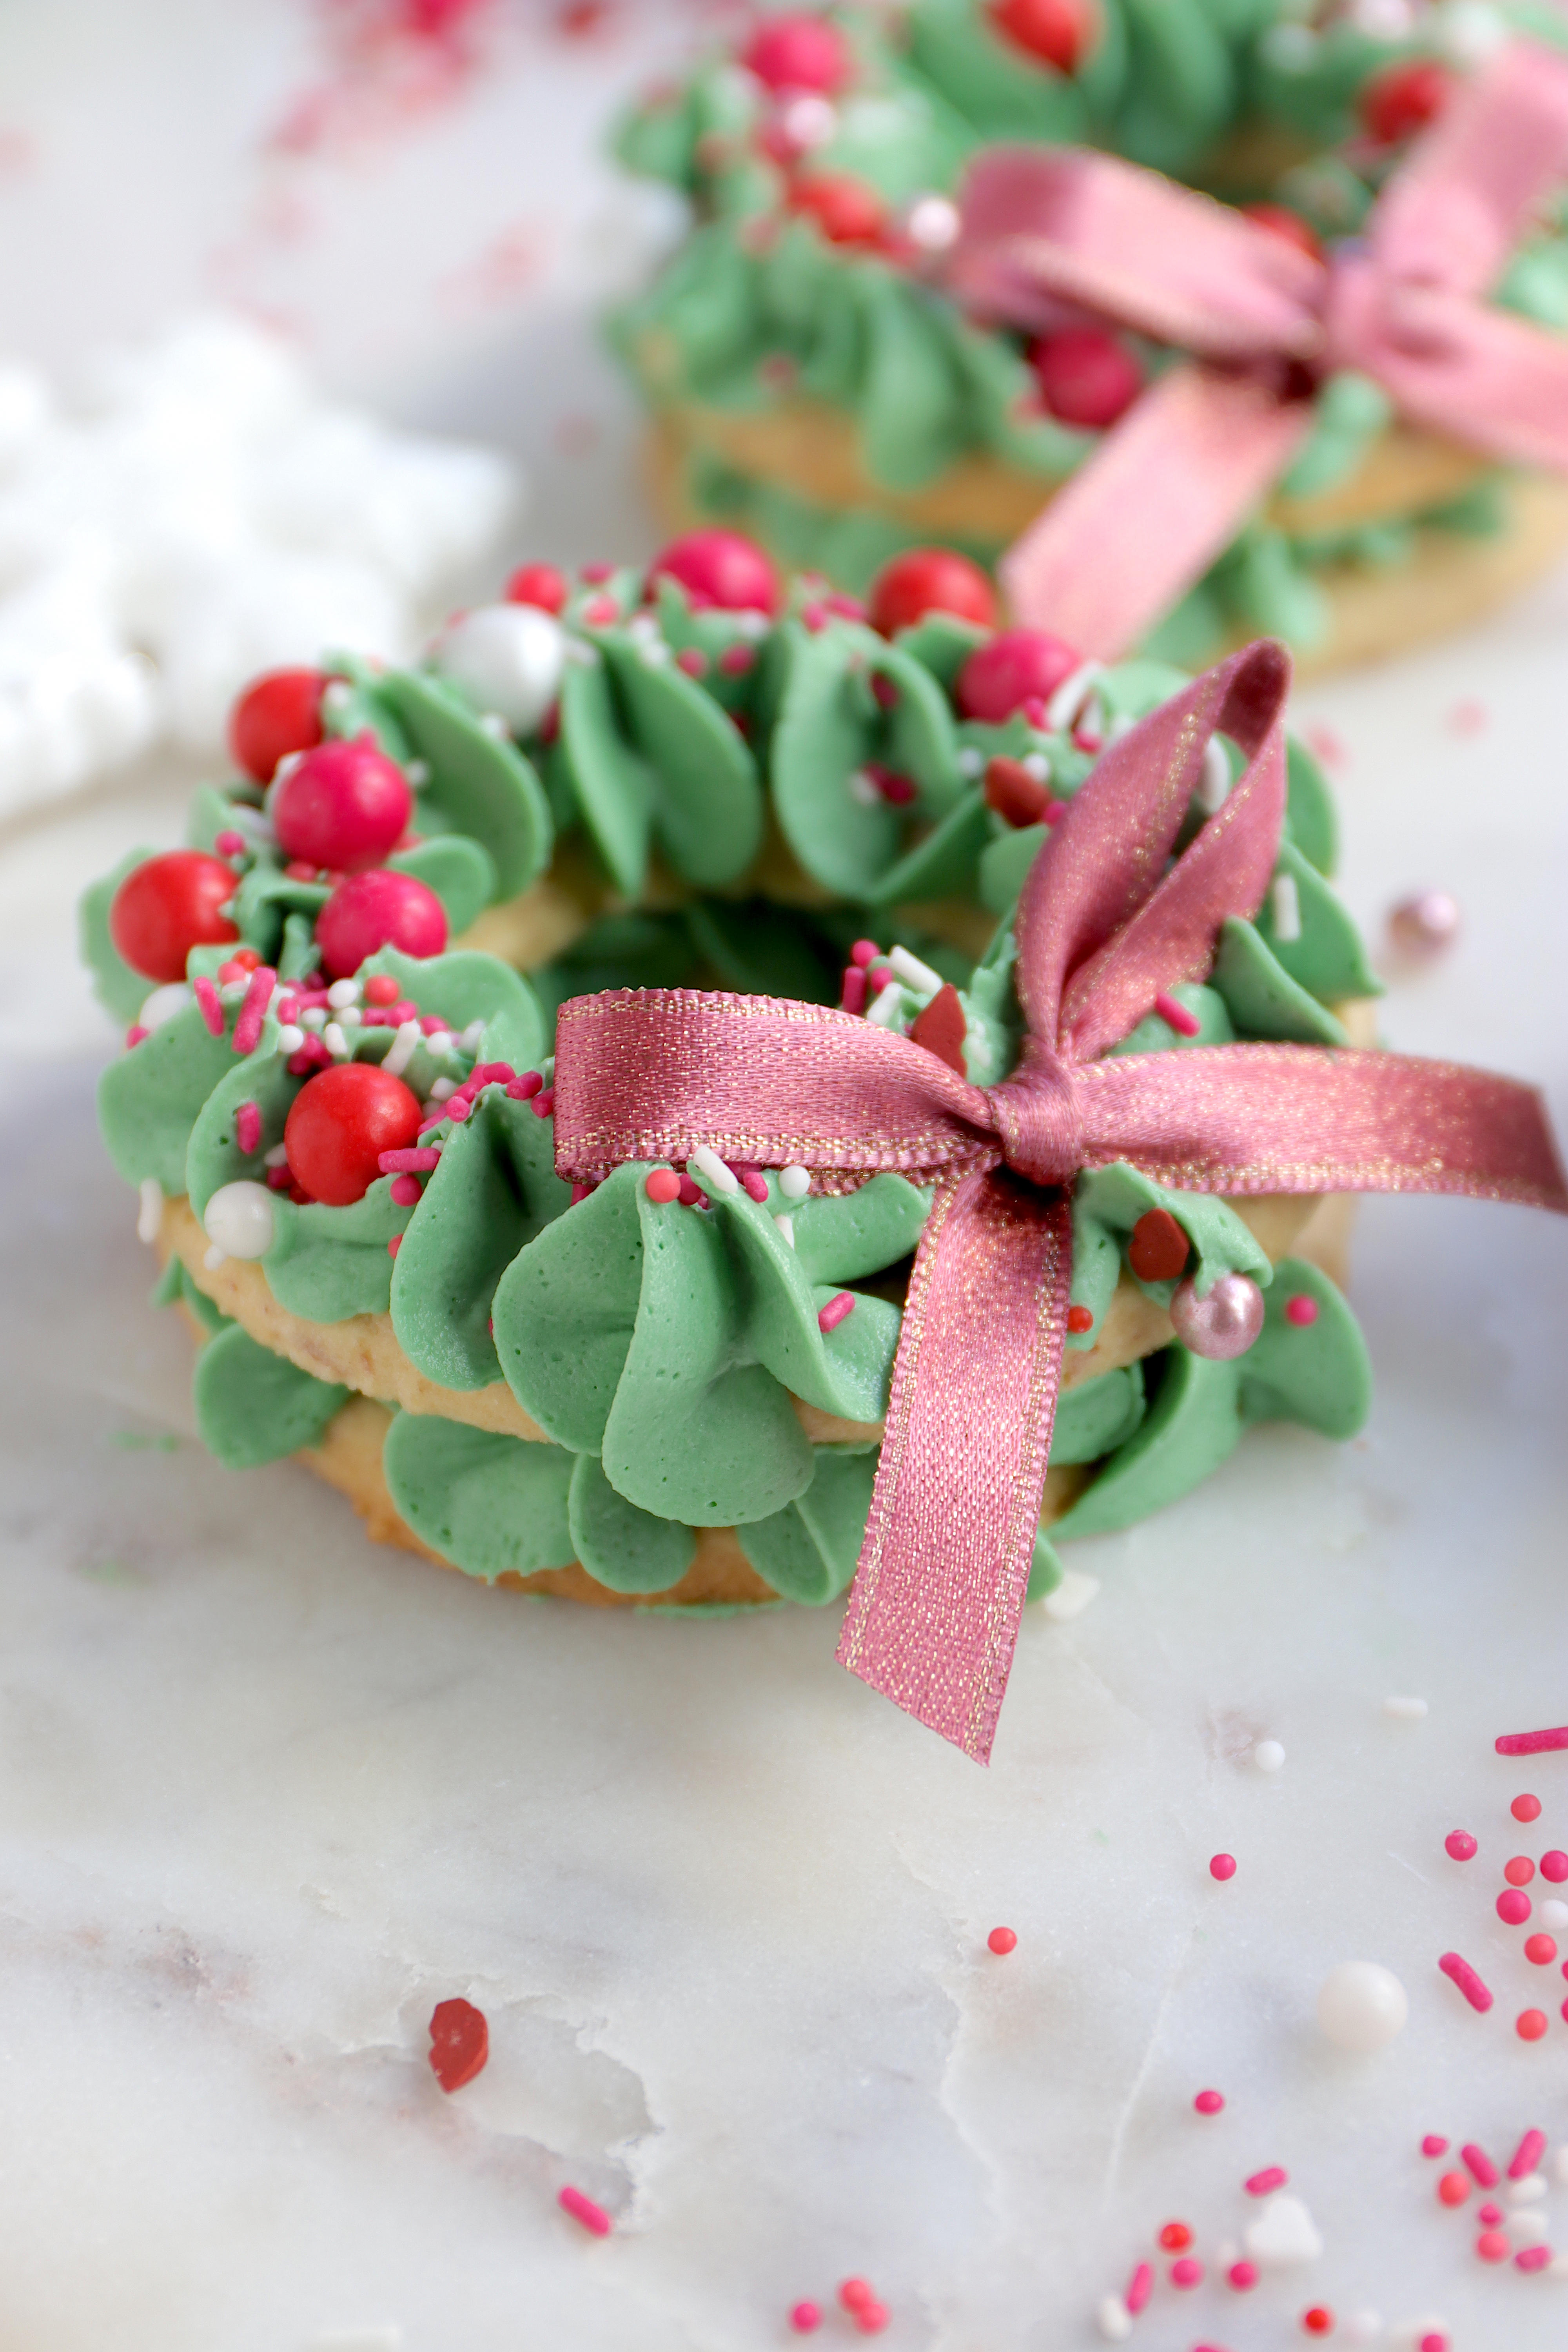 Kekse backen zu Weihnachten als Christbaum